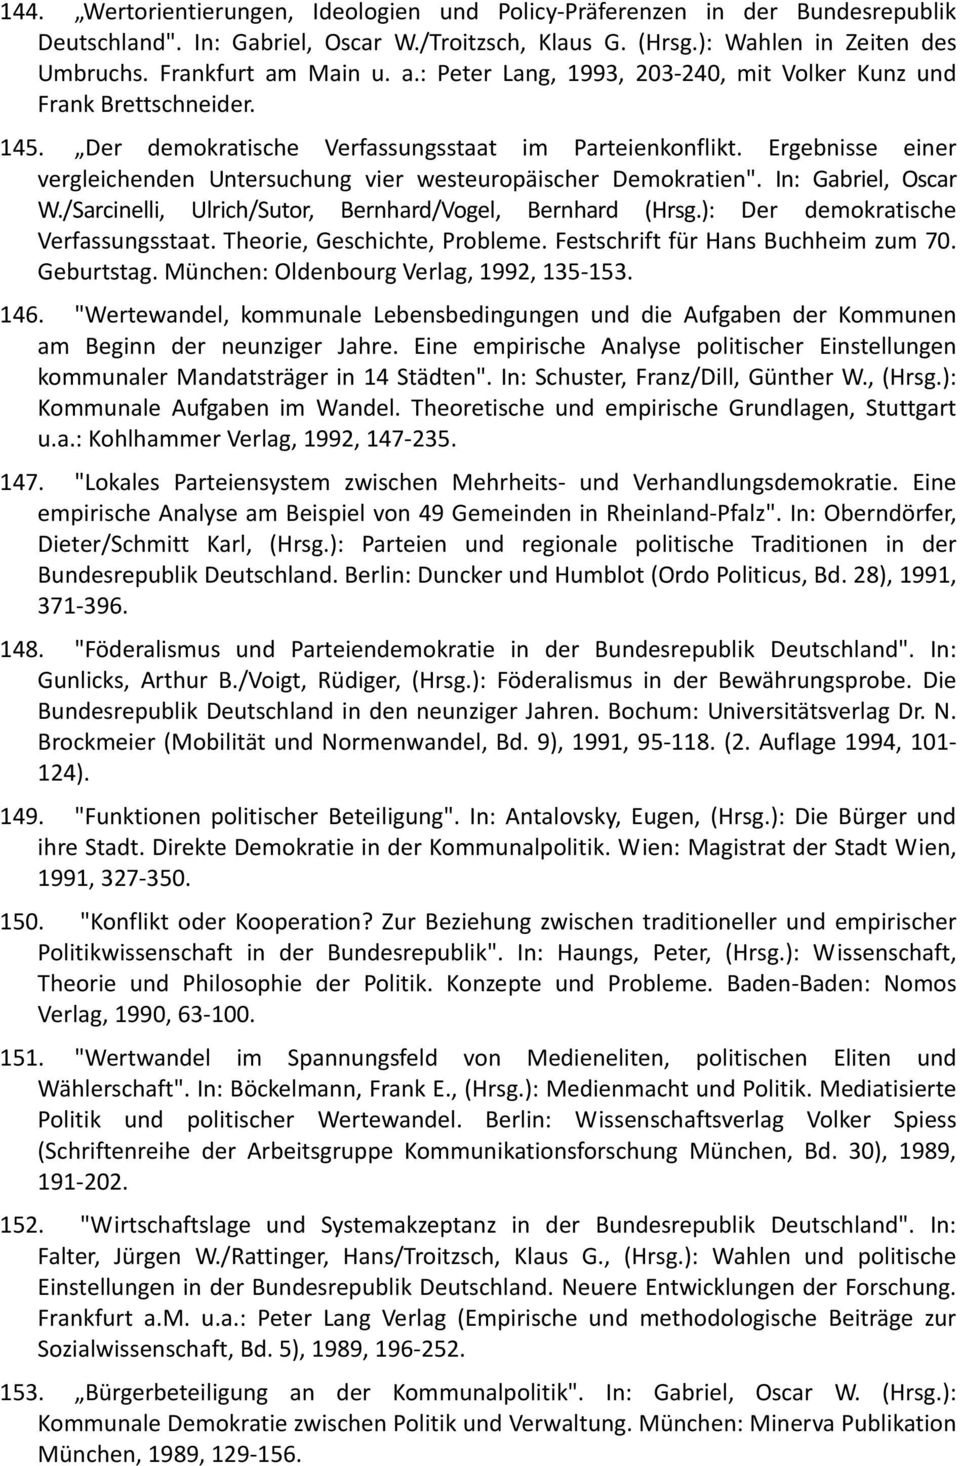 Ergebnisse einer vergleichenden Untersuchung vier westeuropäischer Demokratien". In: Gabriel, Oscar W./Sarcinelli, Ulrich/Sutor, Bernhard/Vogel, Bernhard (Hrsg.): Der demokratische Verfassungsstaat.